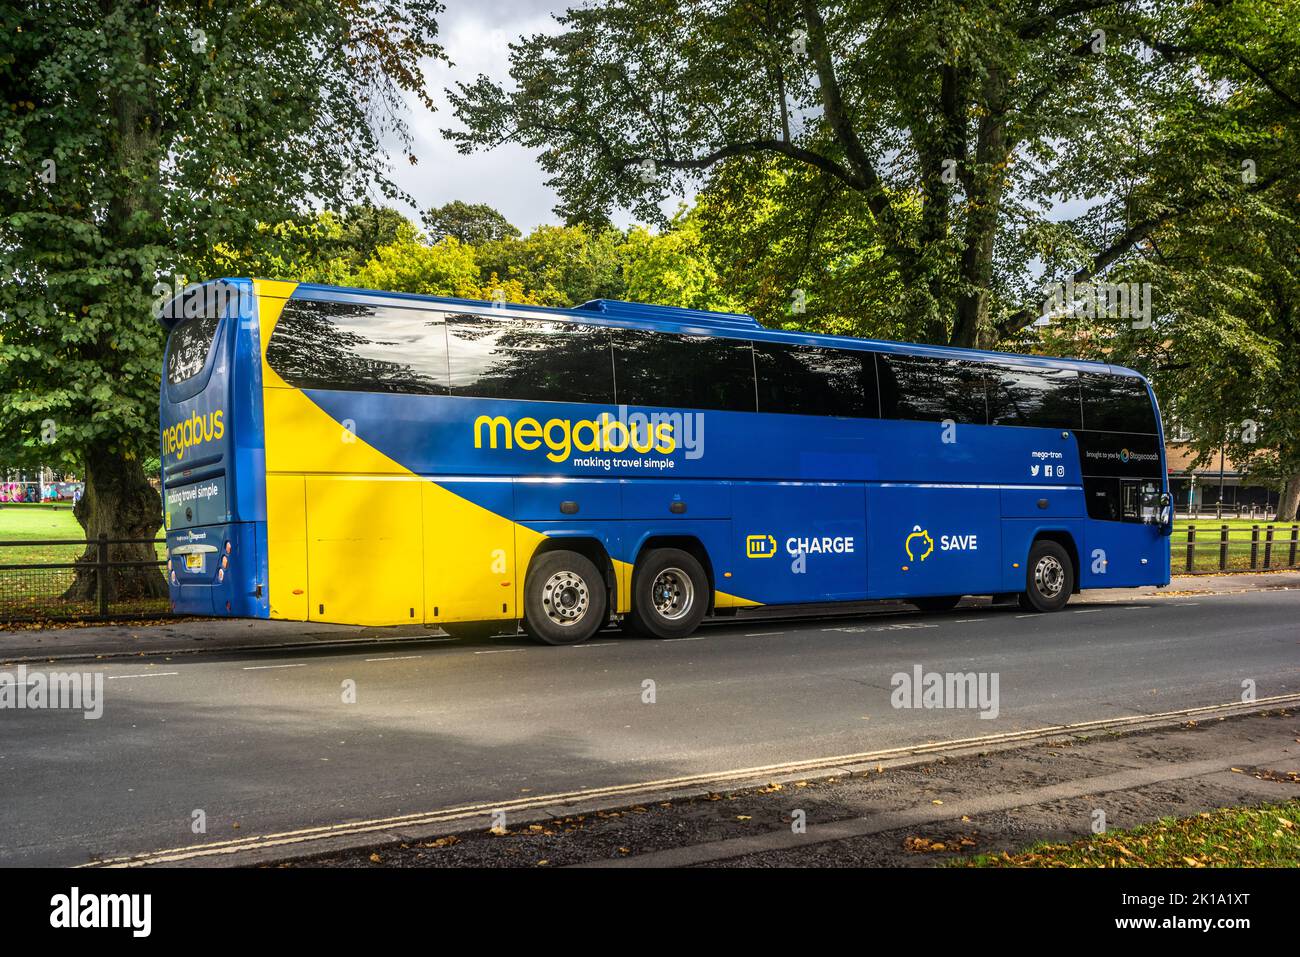 Megabus - trasporto a buon mercato / operatore pullman - pullman parcheggiato a Southampton, Hampshire, Inghilterra, Regno Unito Foto Stock